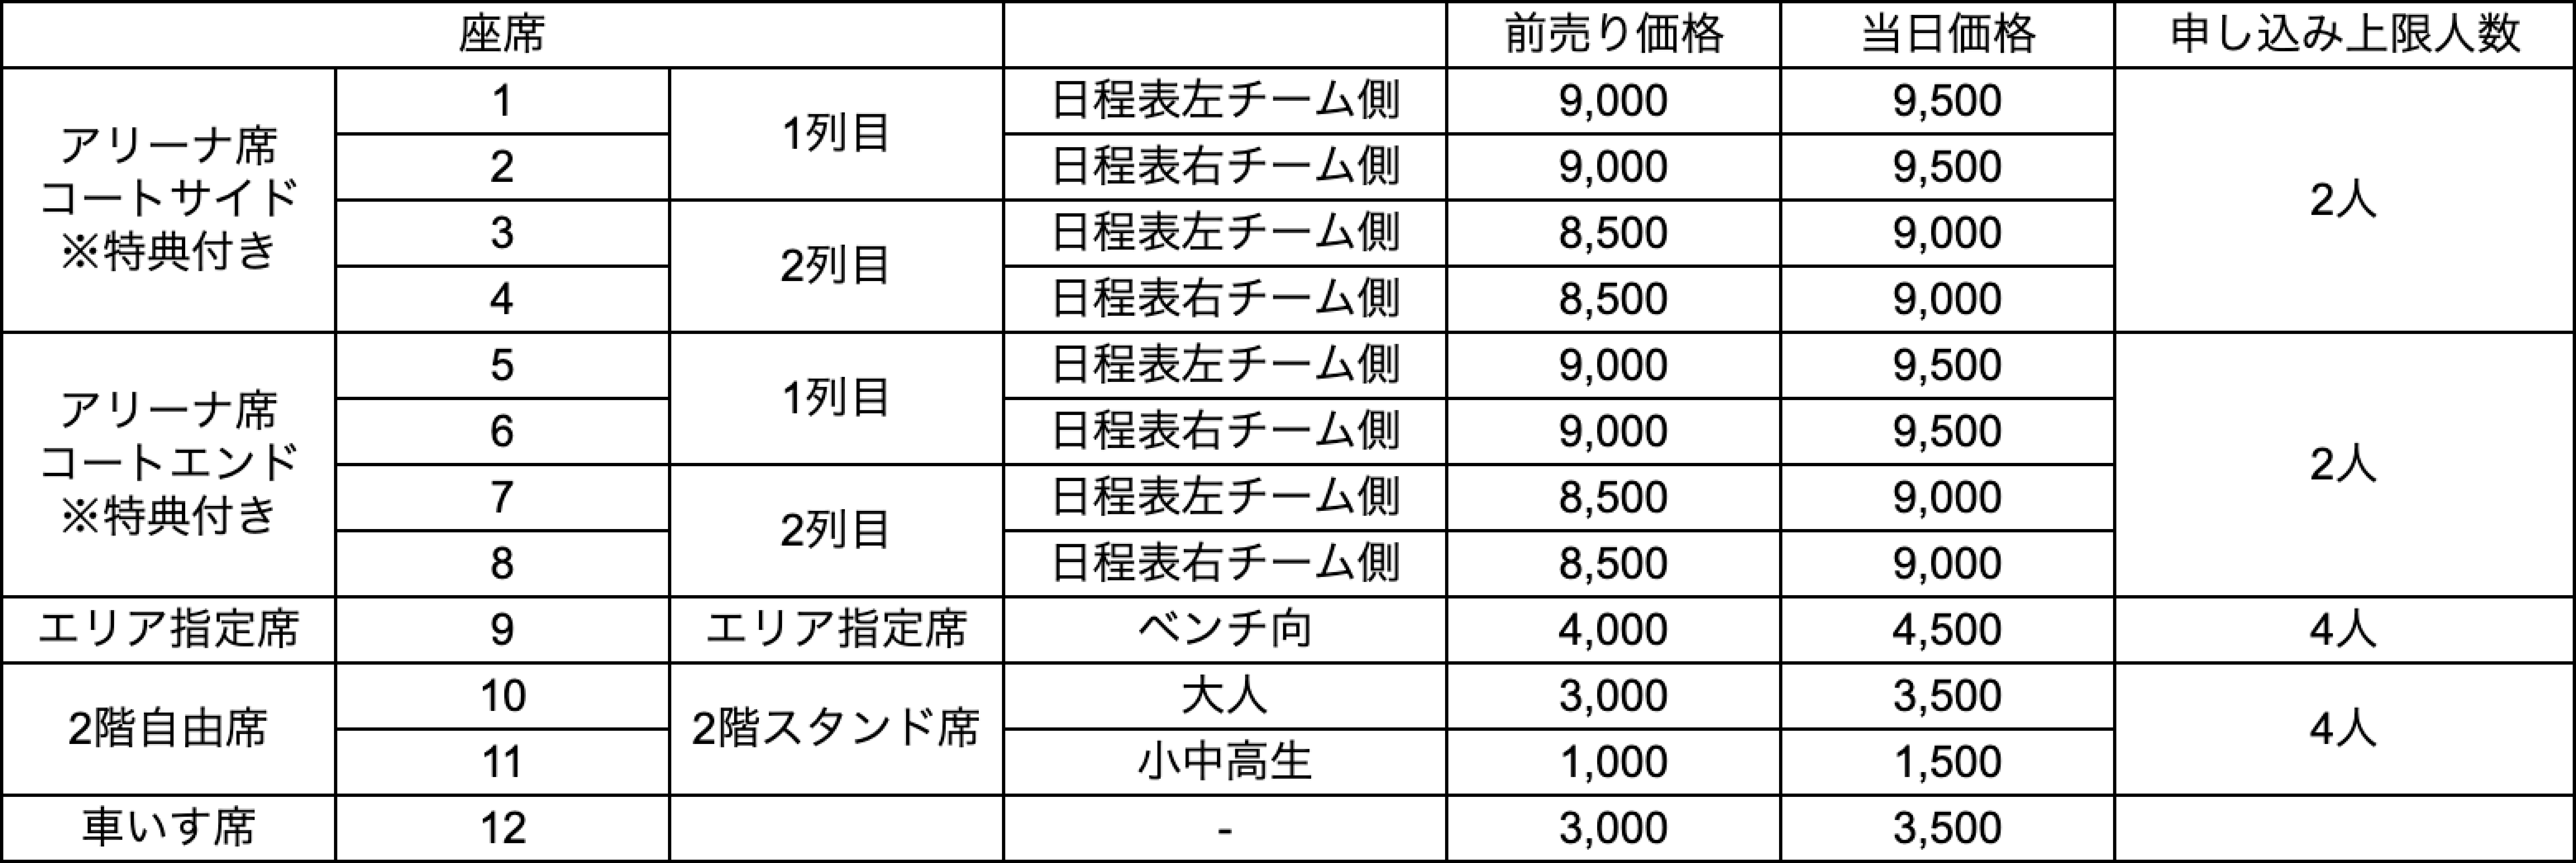 2022新商品 Wリーグ チケット 富士通 12/26(日) エリア指定席2枚 - バスケットボール